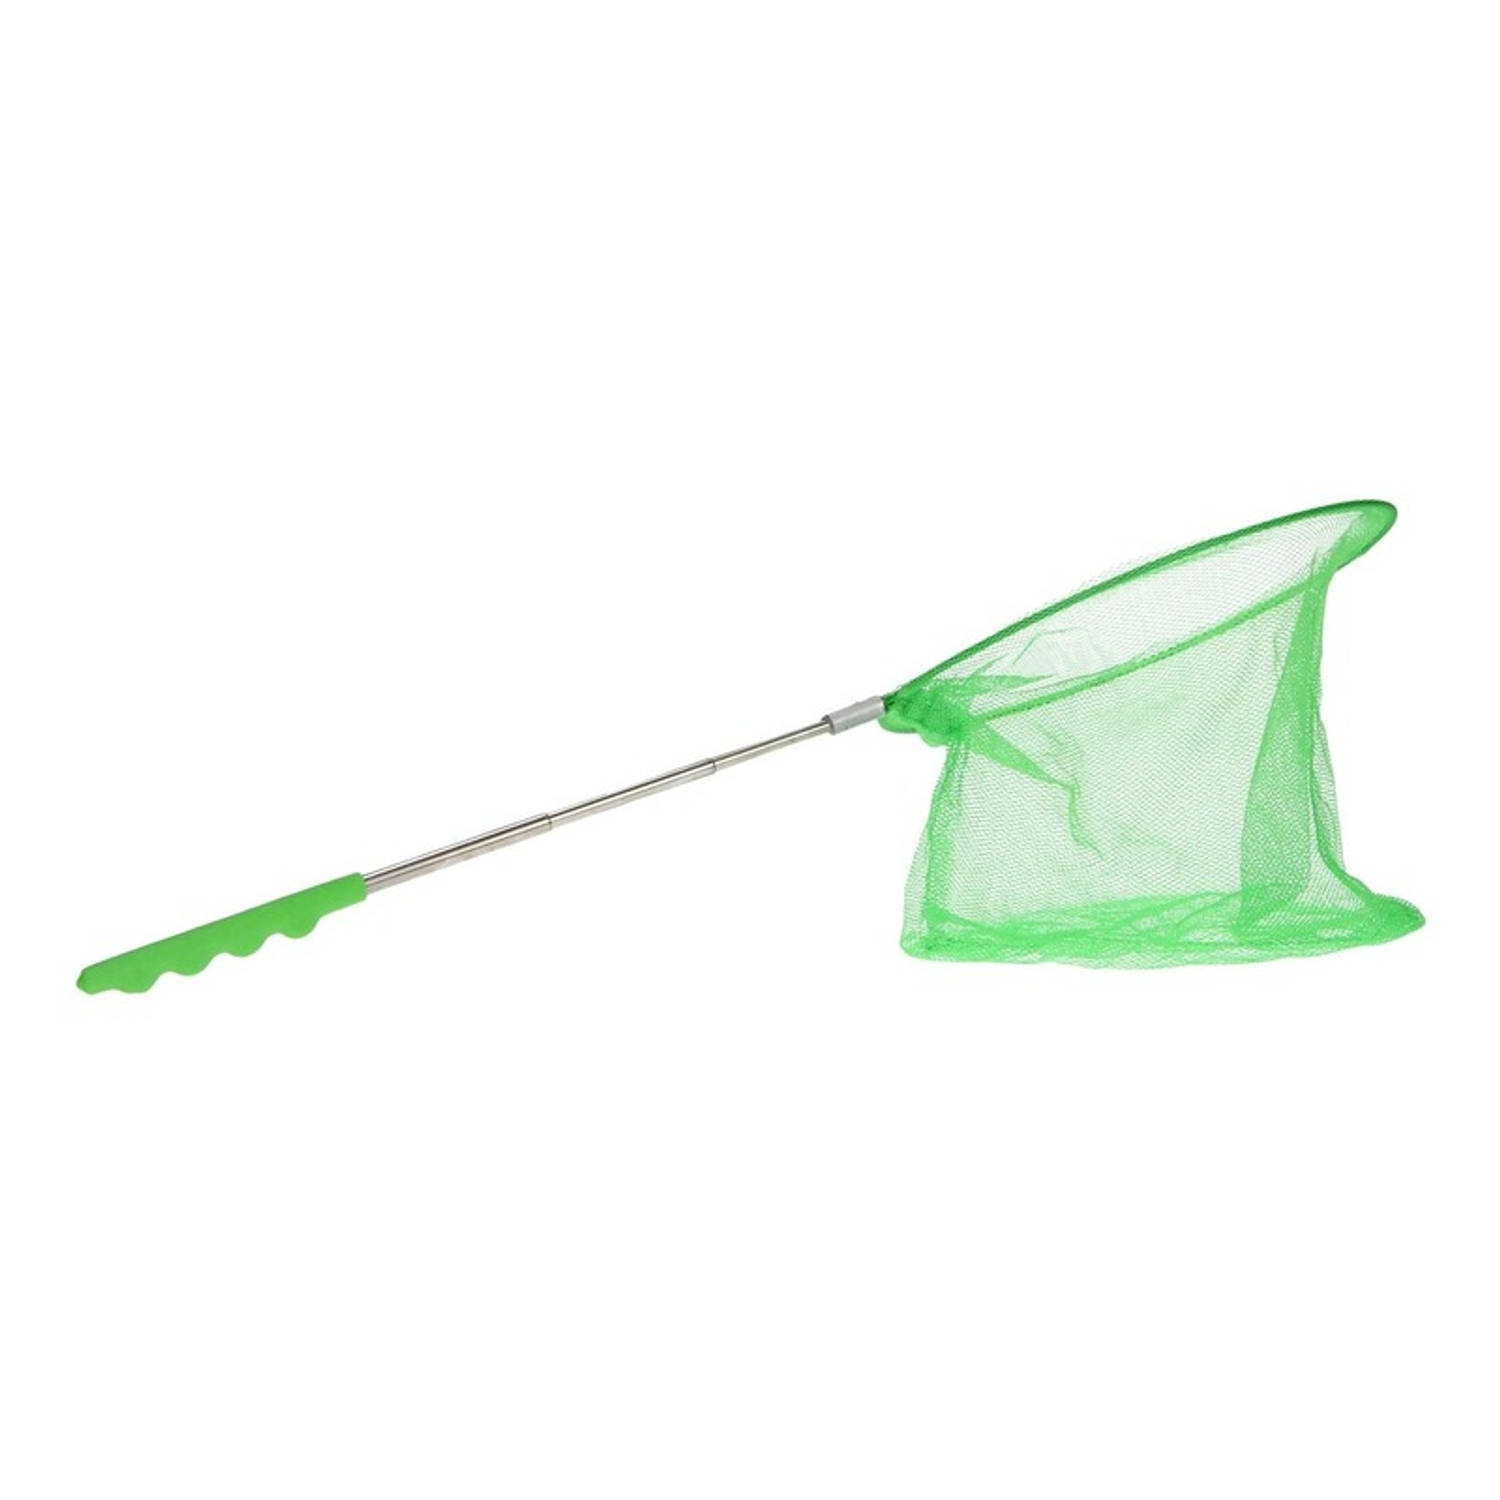 prieel is er Meer dan wat dan ook Groen uitschuifbaar visnet/vlindernet 36 cm - Schepnetten | Blokker